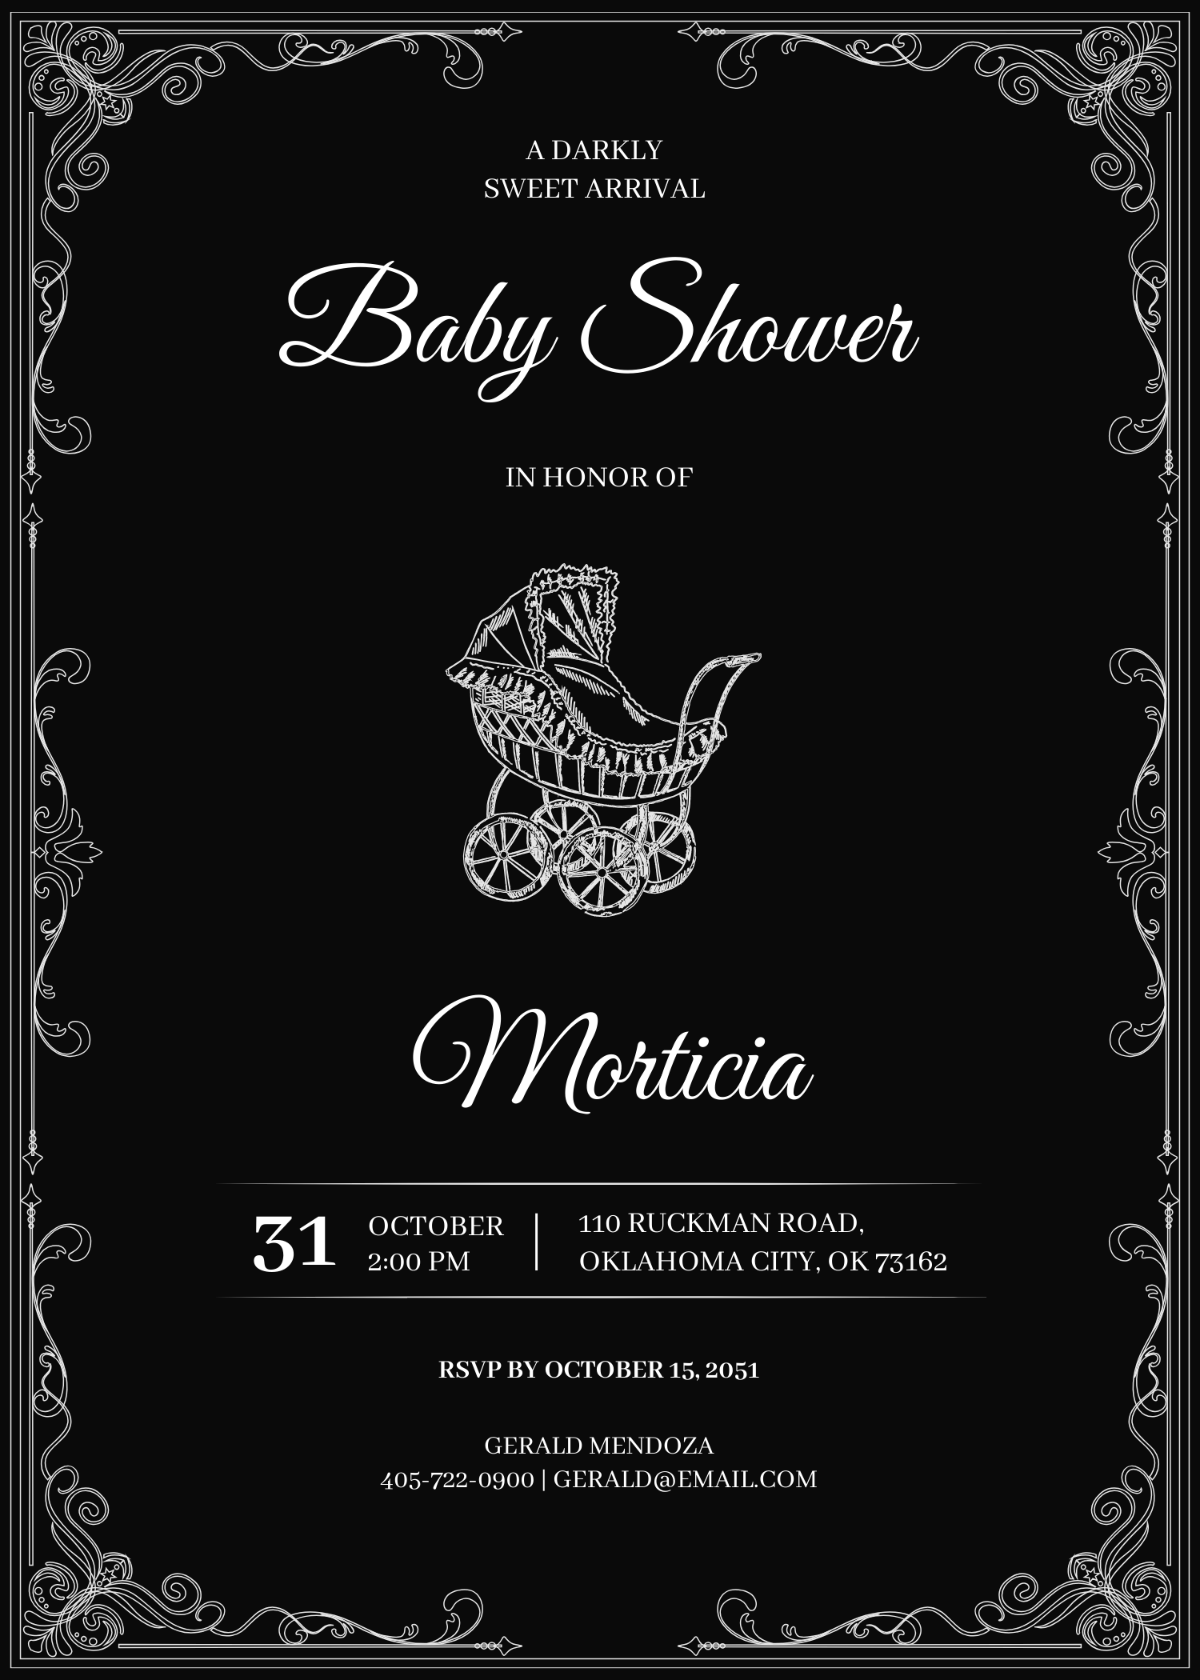 Gothic Baby Shower Invitation